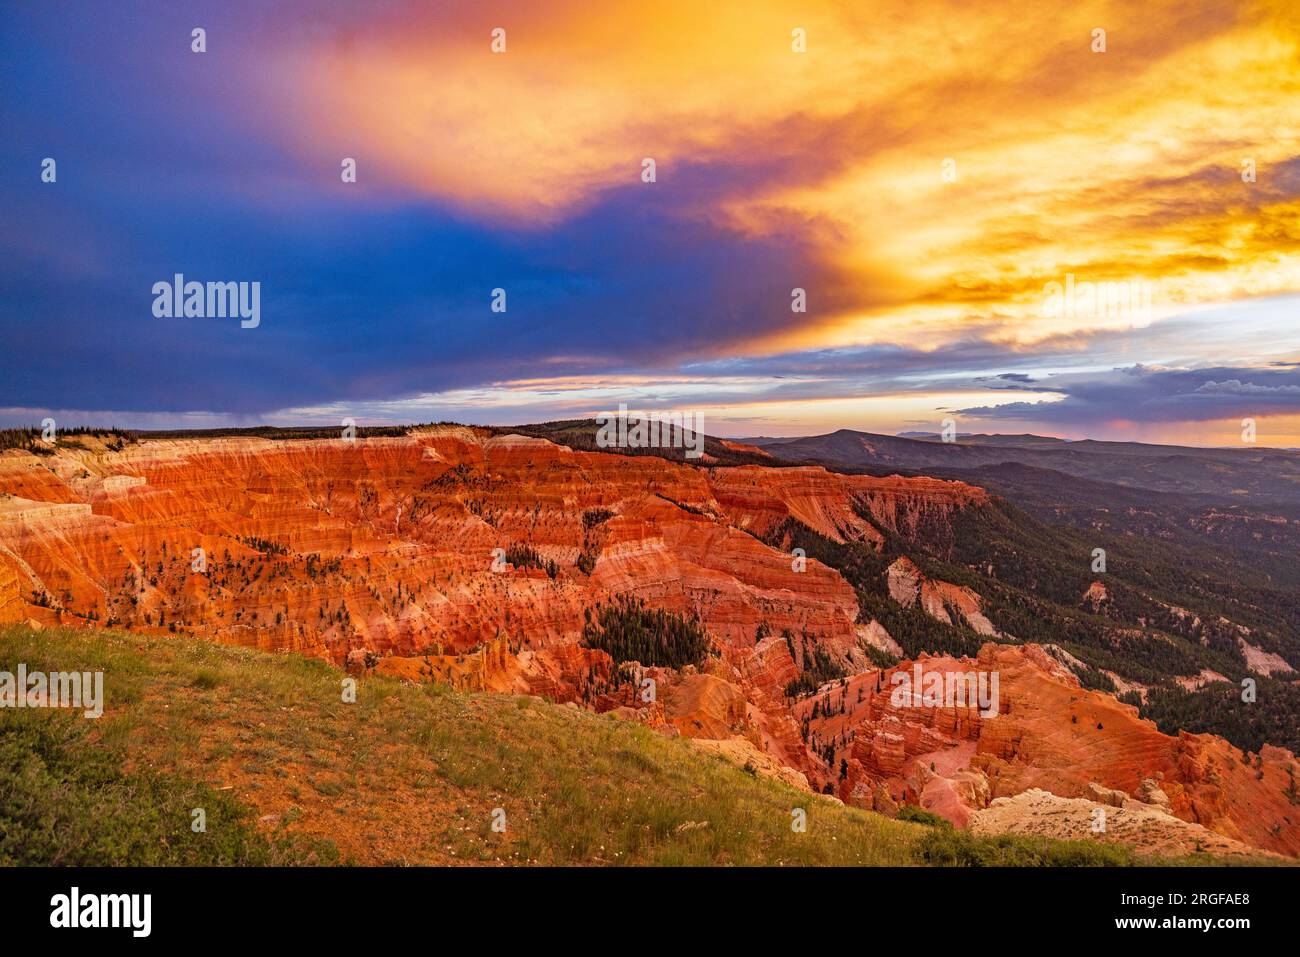 Il sole che tramonta illumina le scogliere di roccia rossa e le nuvole a est, come si vede dal Chessman Ridge, che si affaccia sul Cedar Breaks National Monument, Utah, USA. Foto Stock